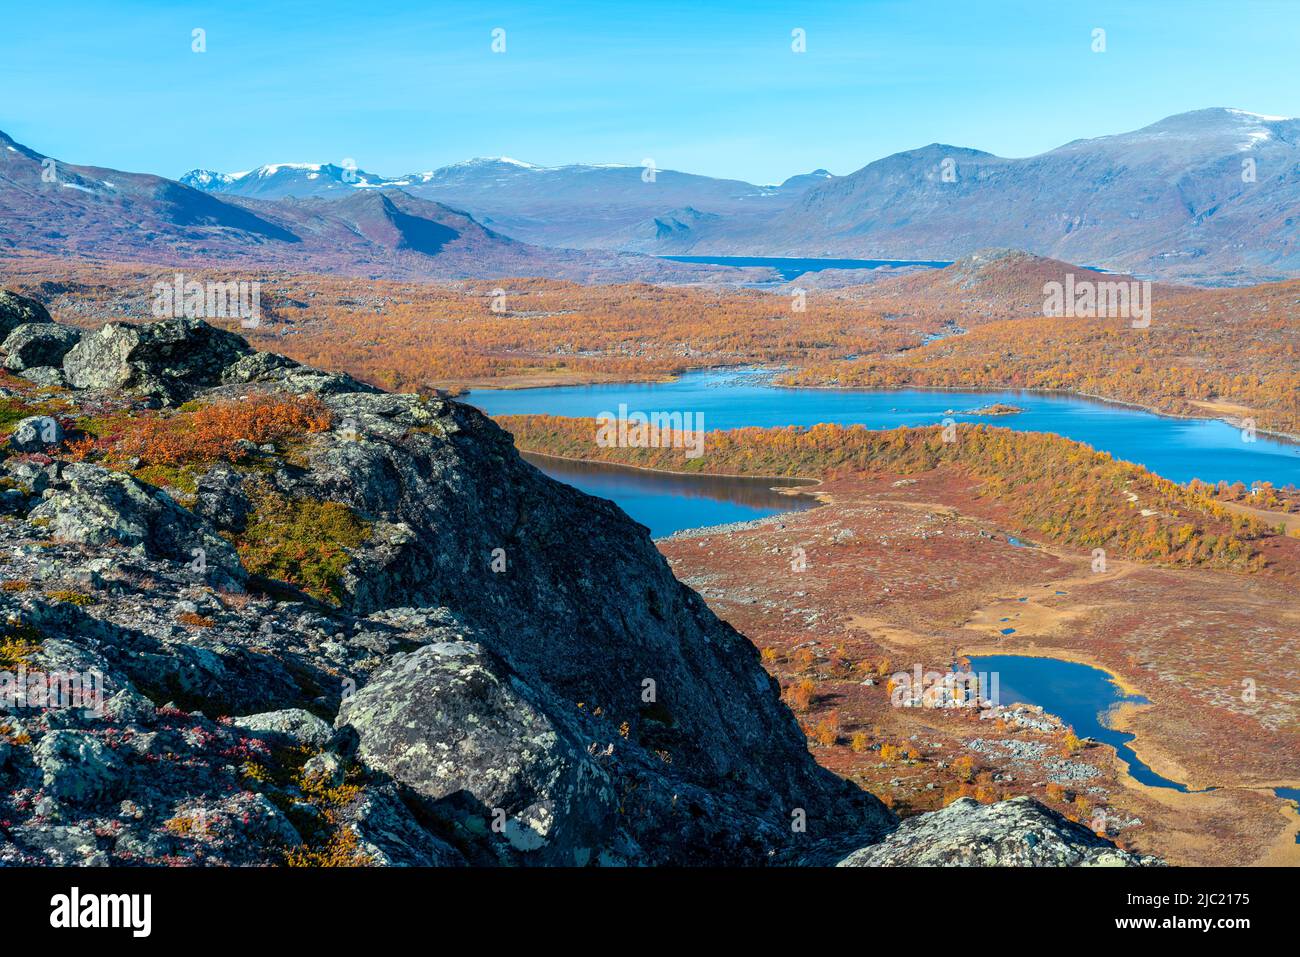 Epischer Blick auf die riesige arktische Landschaft des Stora Sjofallet National Park, Schweden, am Herbsttag. Berge und Täler Lapplands. Herbstfarben in der Stockfoto